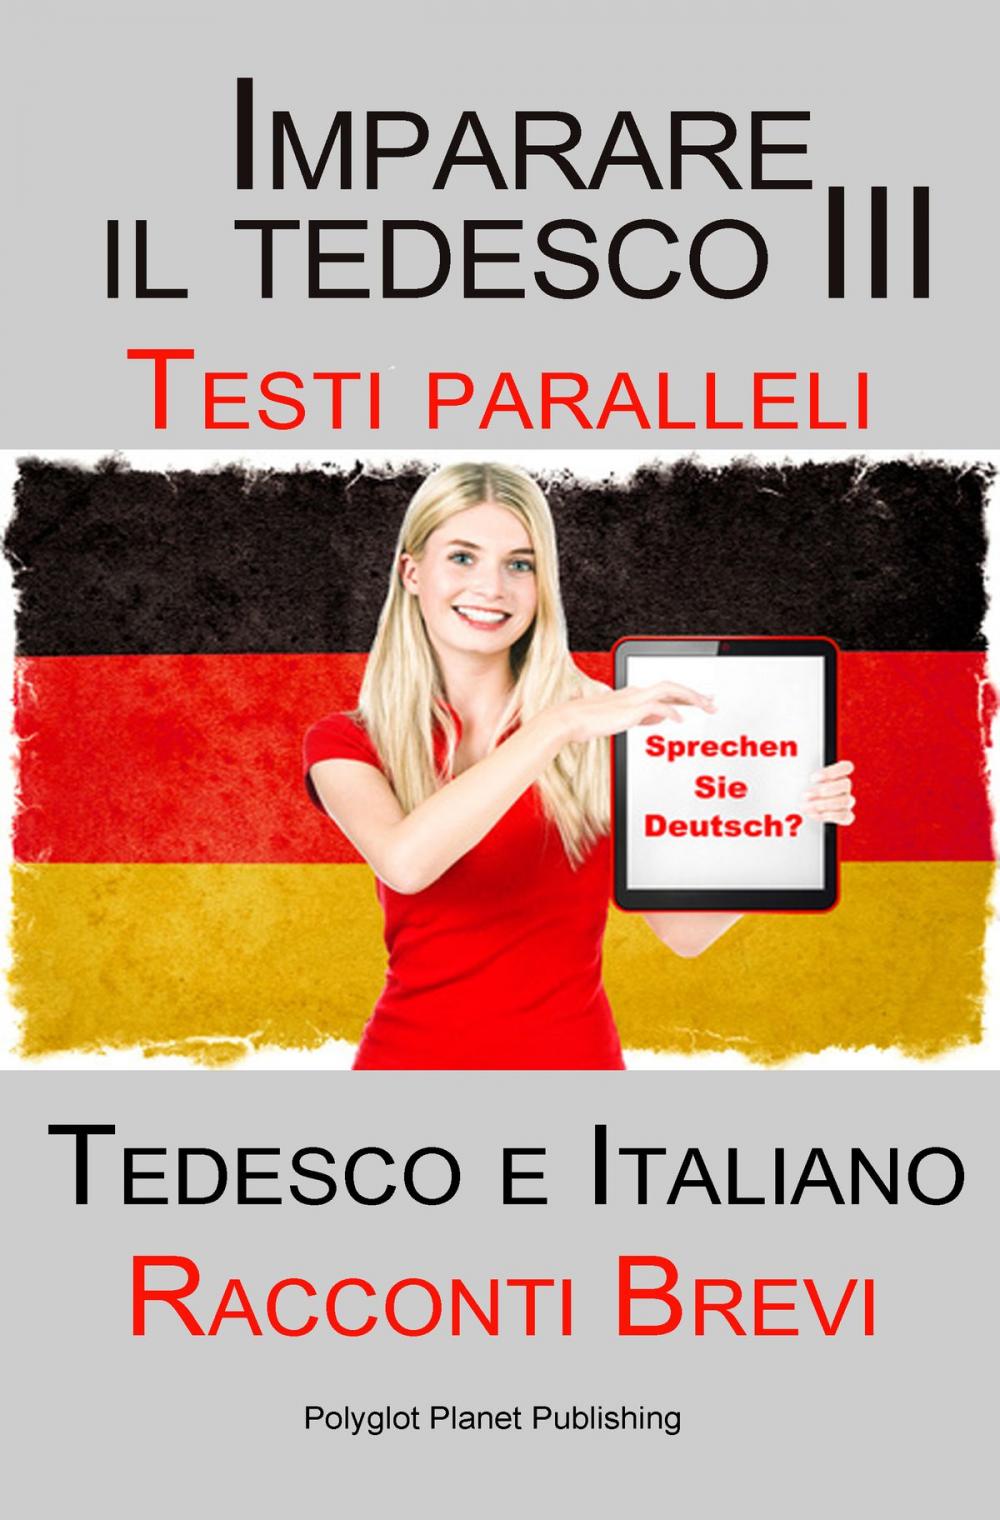 Big bigCover of Imparare il tedesco III con Testi paralleli - Racconti Brevi III (Tedesco e Italiano)